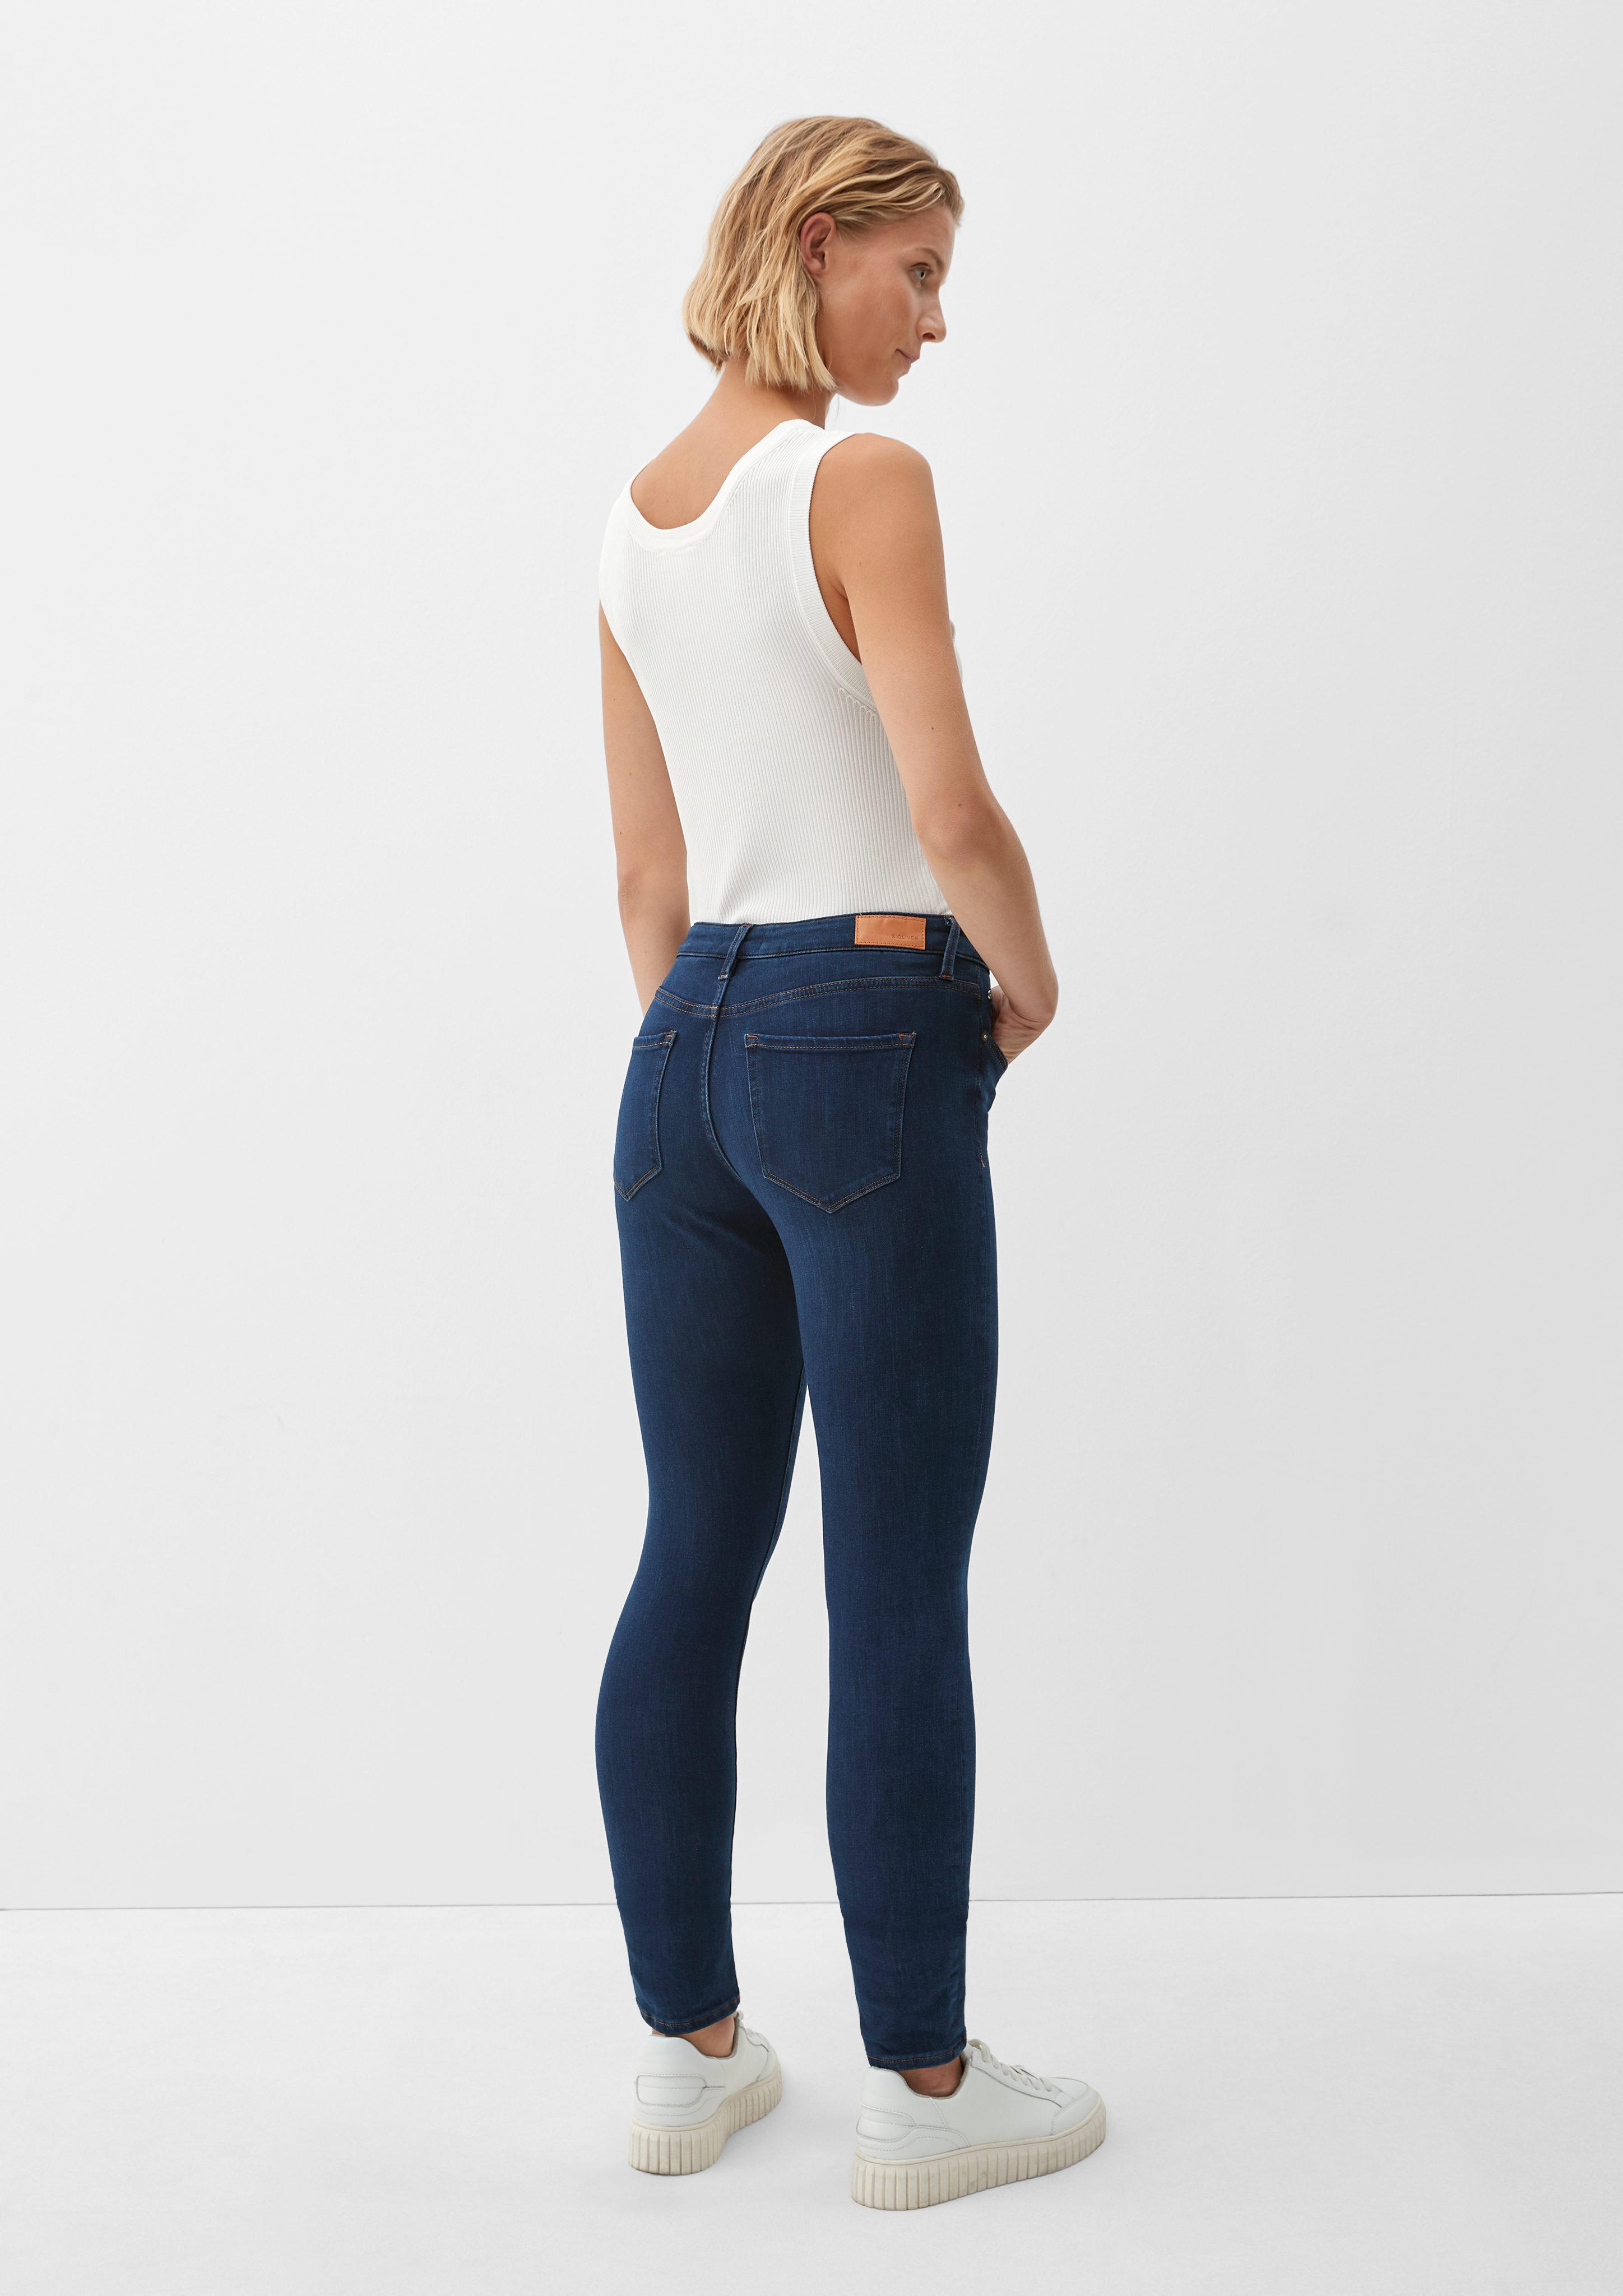 s.Oliver 5-Pocket-Jeans dark / Fit / blue Leg Skinny Izabell Label-Patch / Mid Jeans Rise Skinny